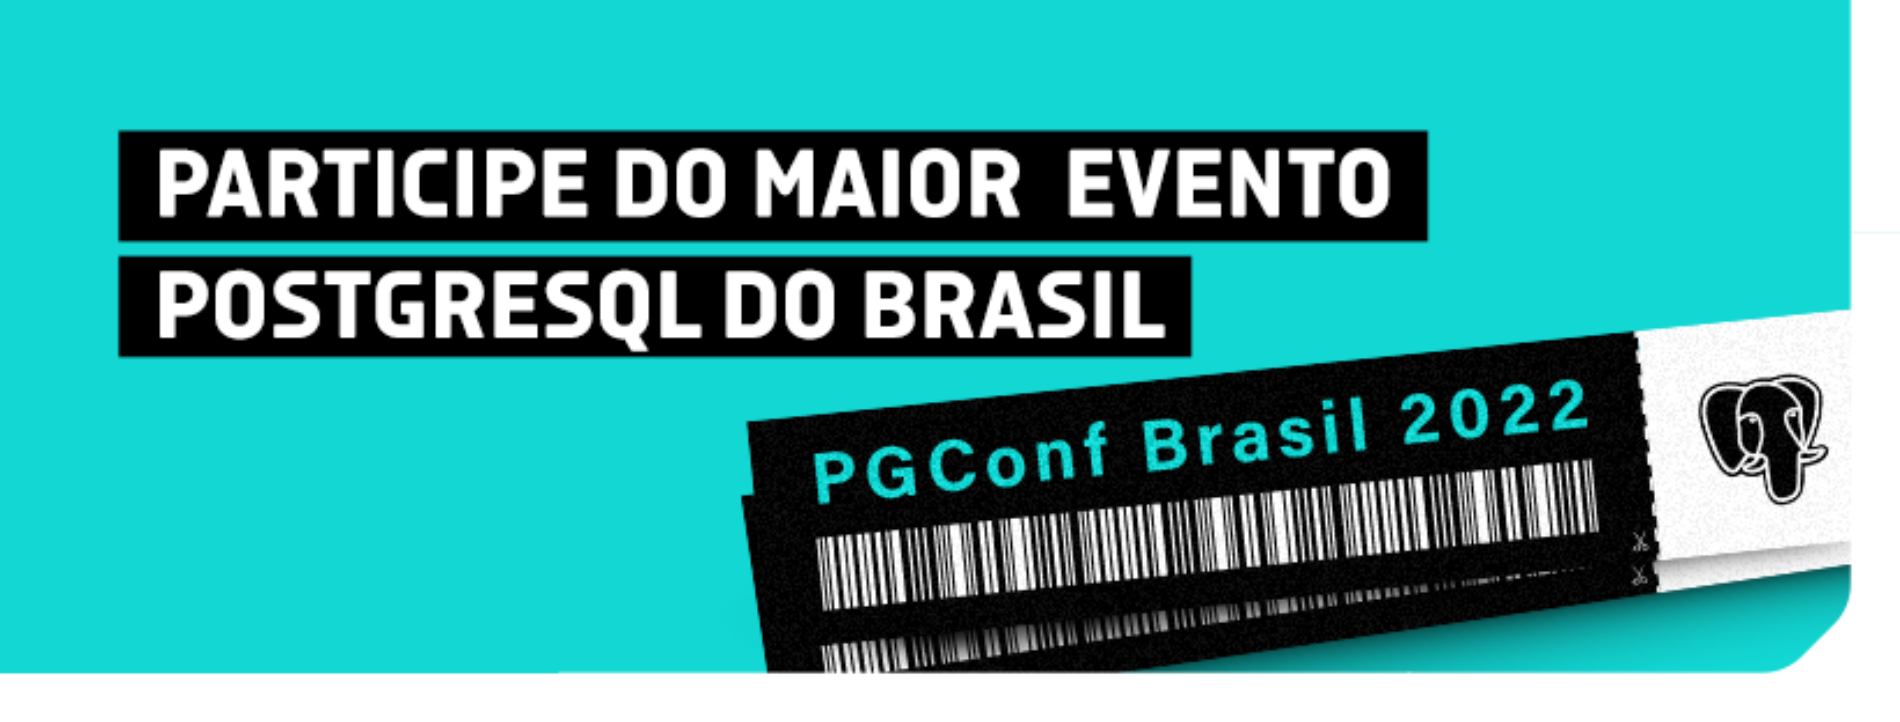 Participe do maior evento PostgreSQL do Brasil.